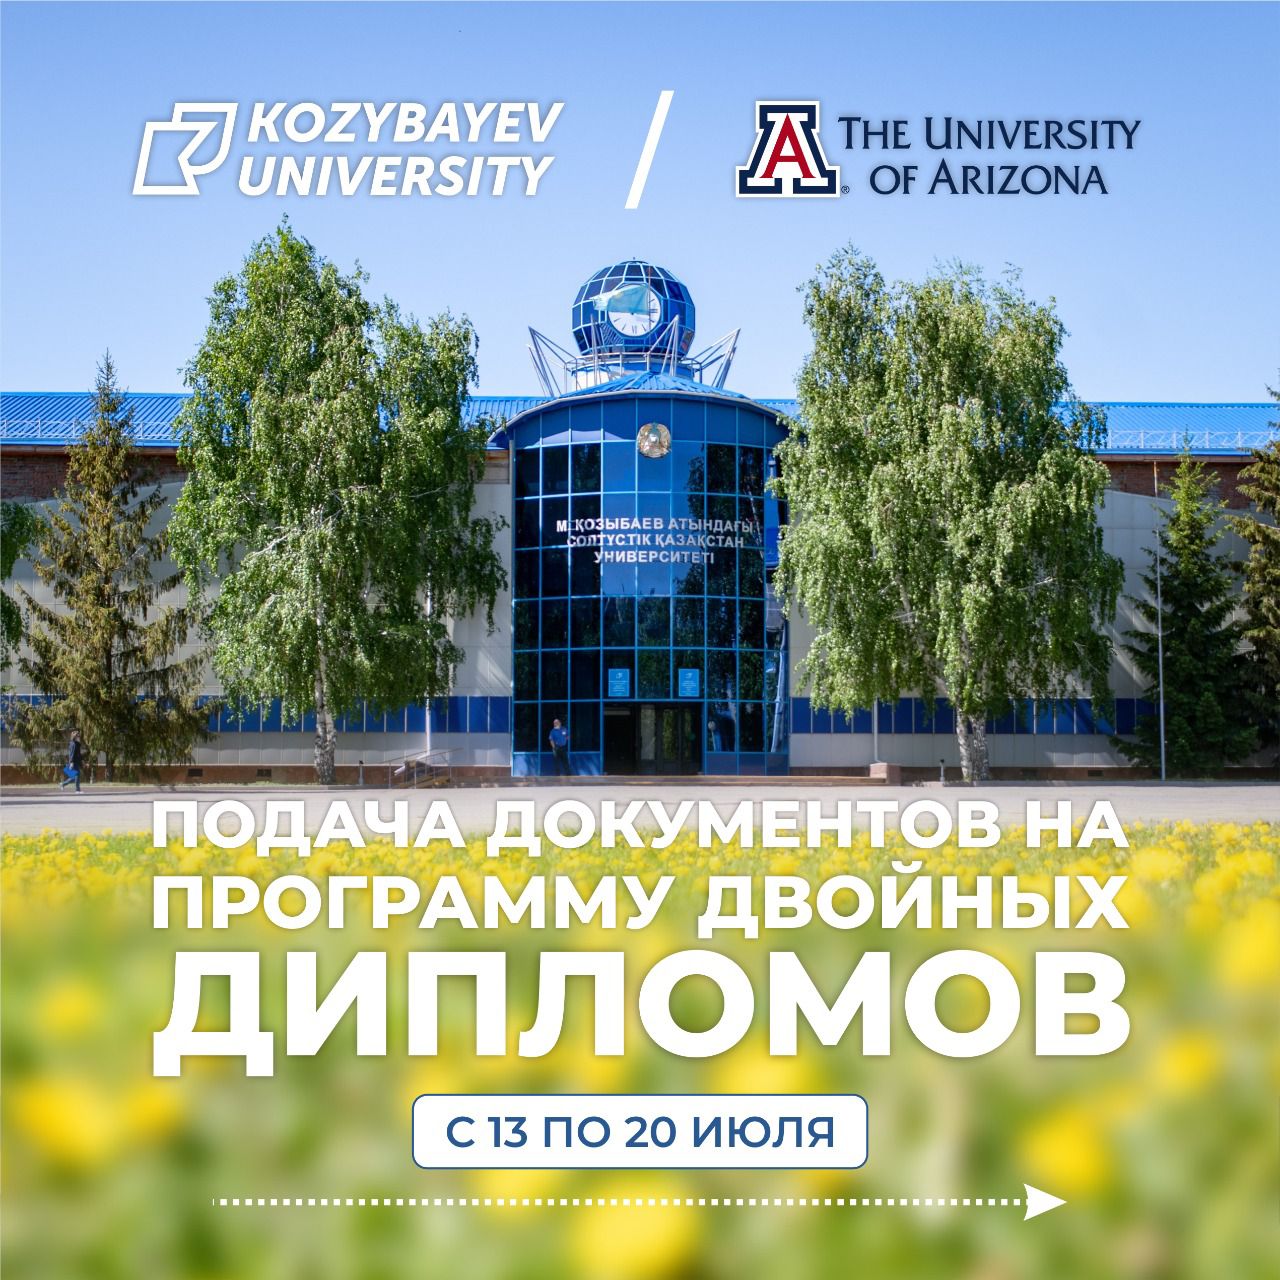 Қозыбаев университеті